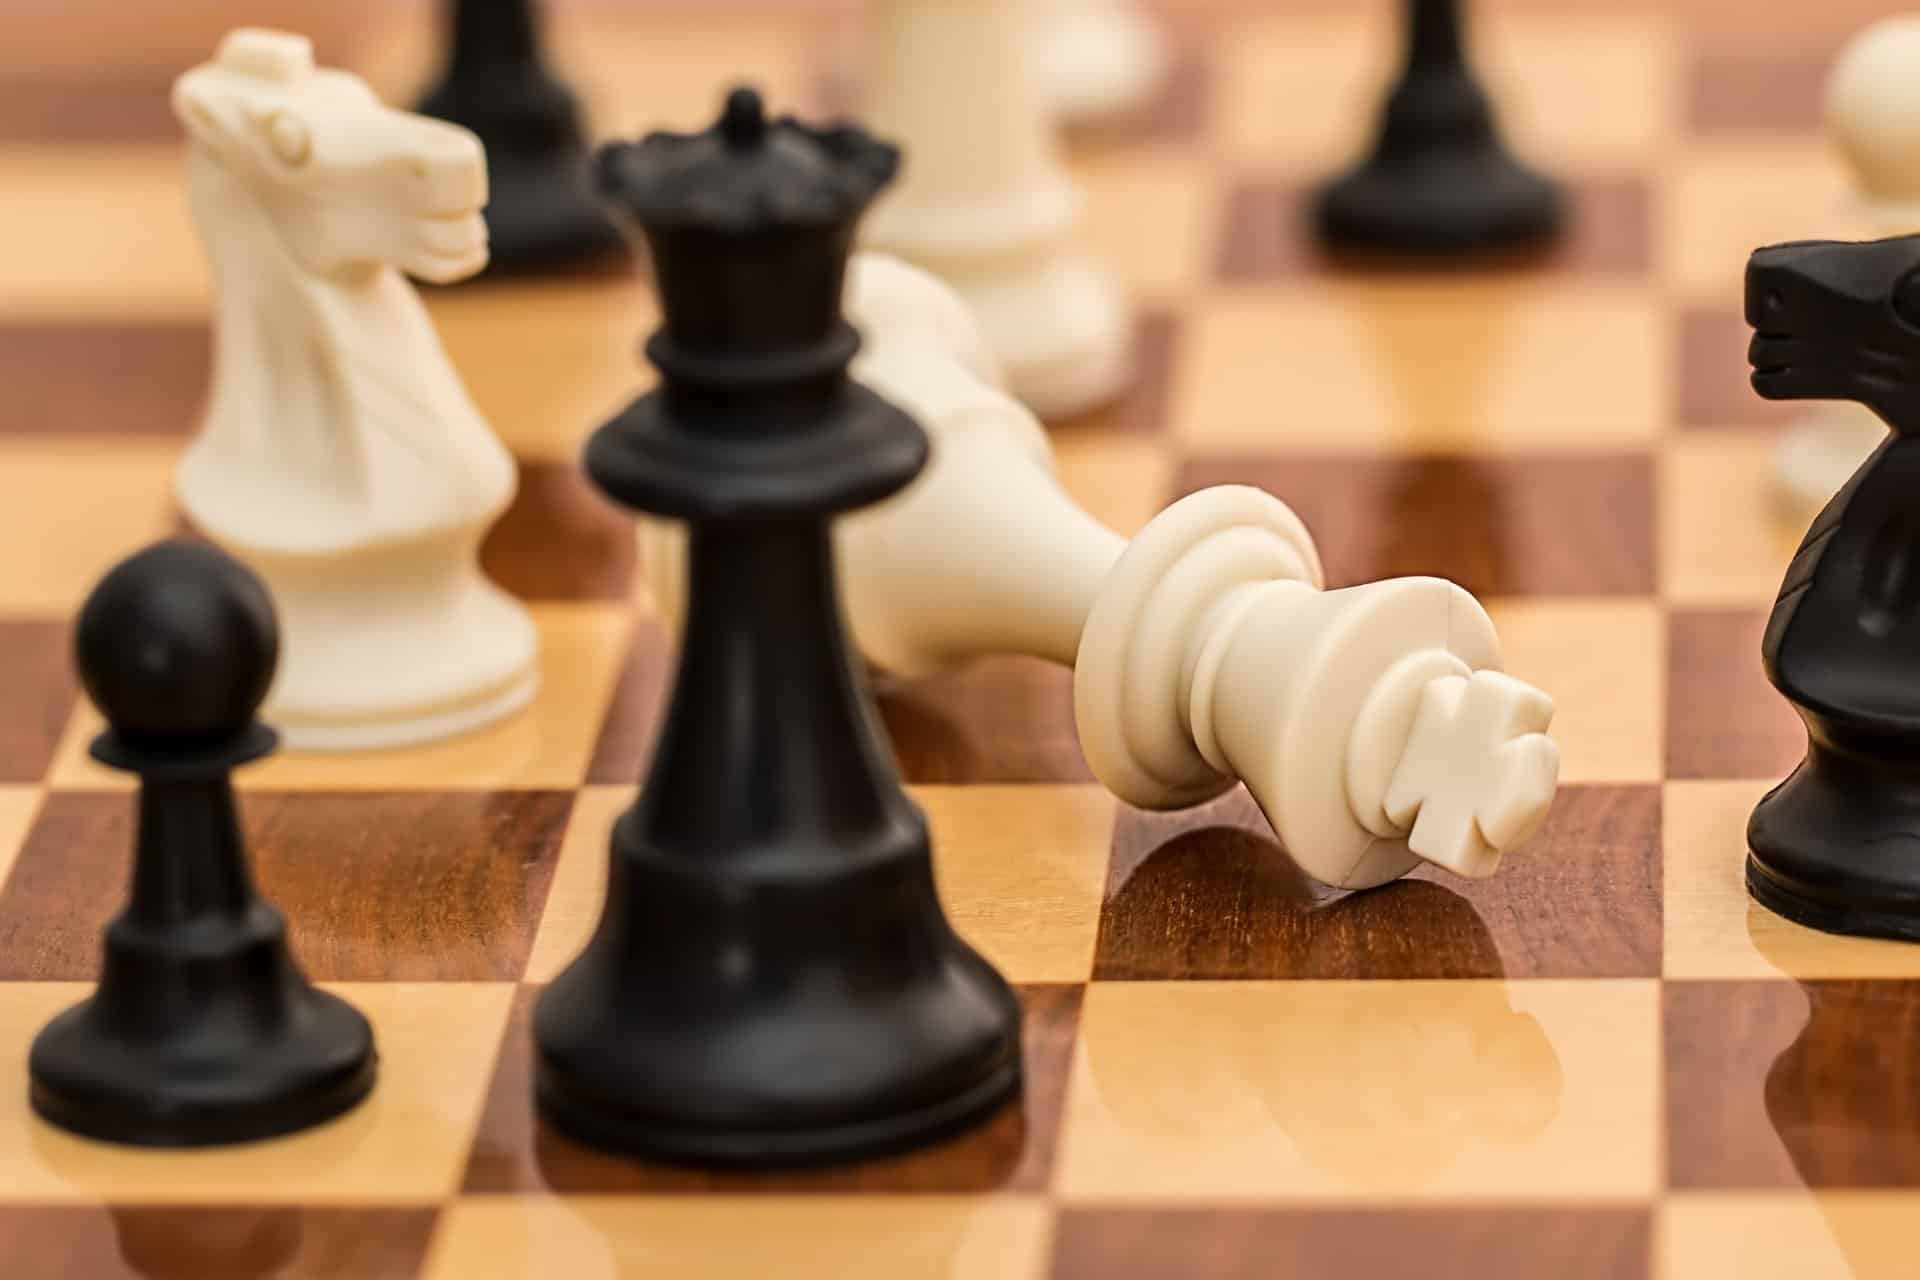 Matemático de Harvard soluciona problema de xadrez de 150 anos